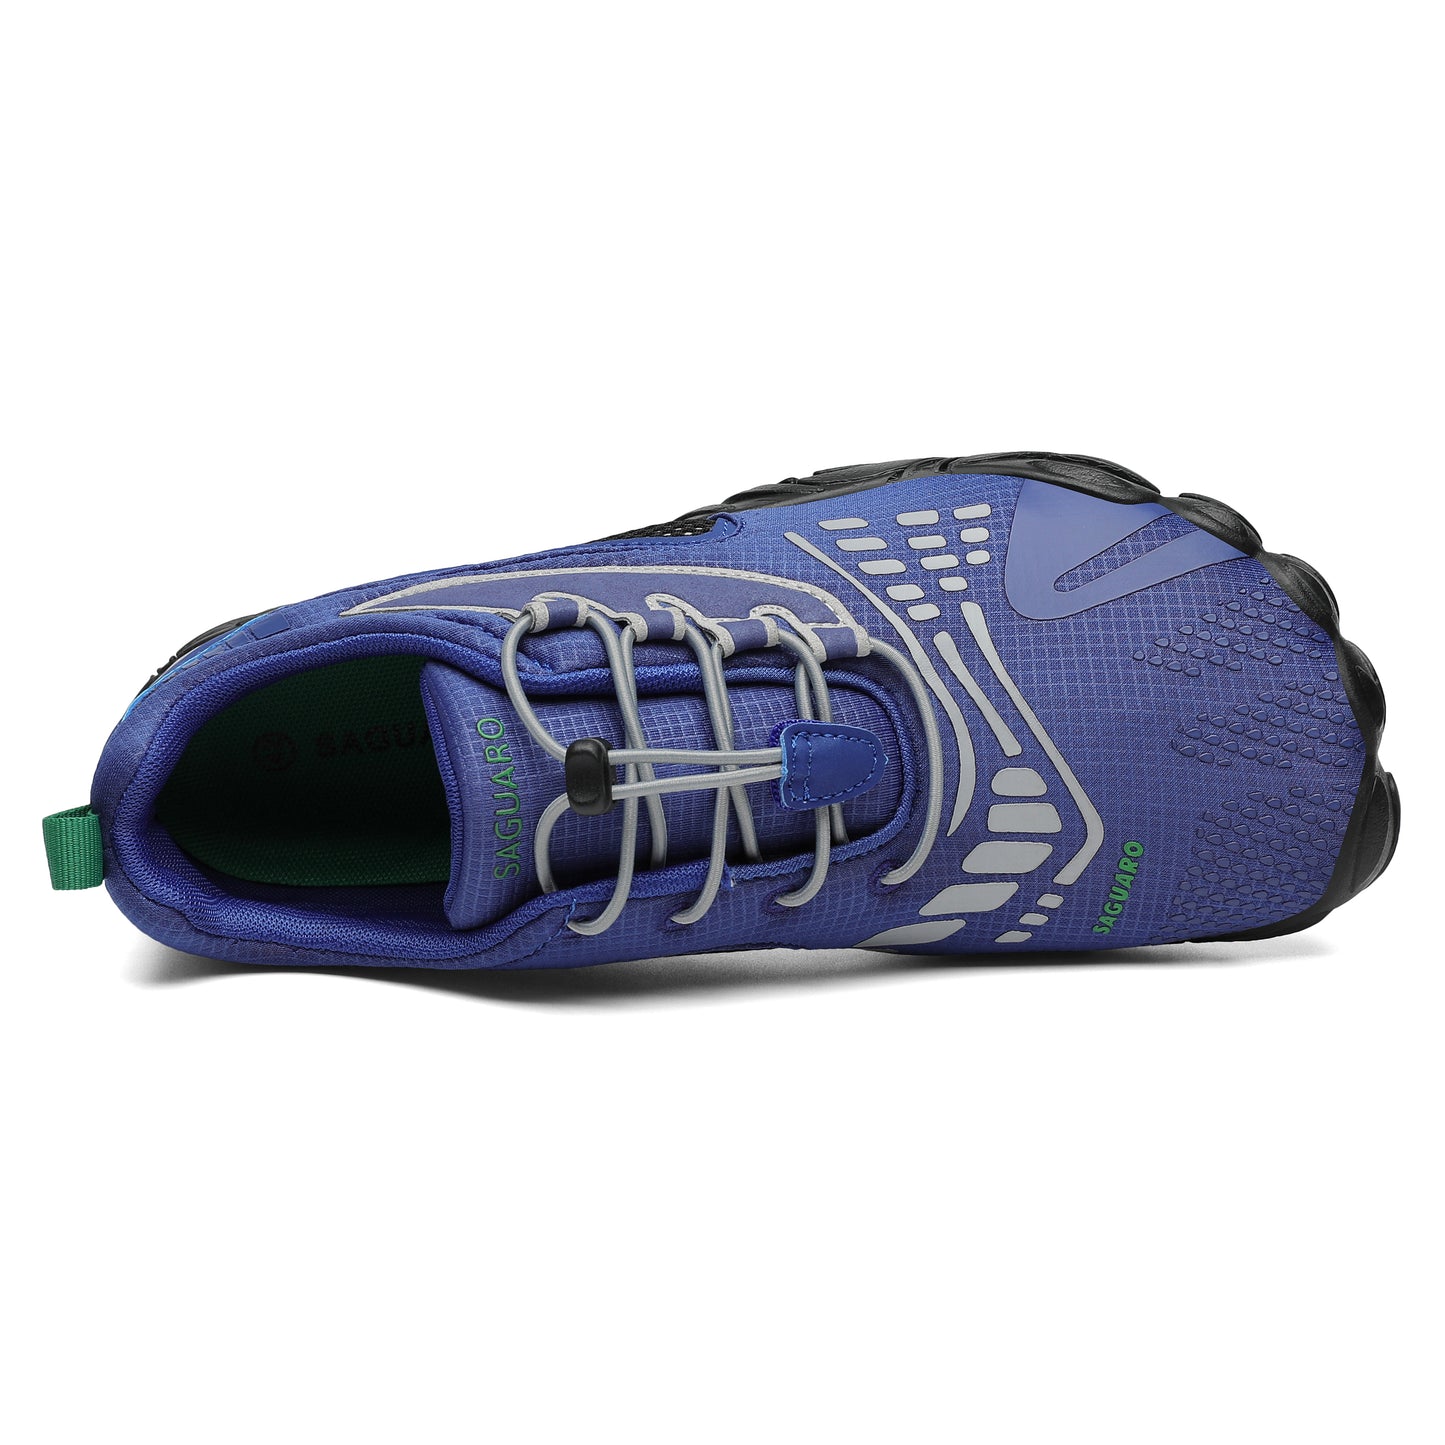 Chaser Vitality II - Azul - Barefootshoes